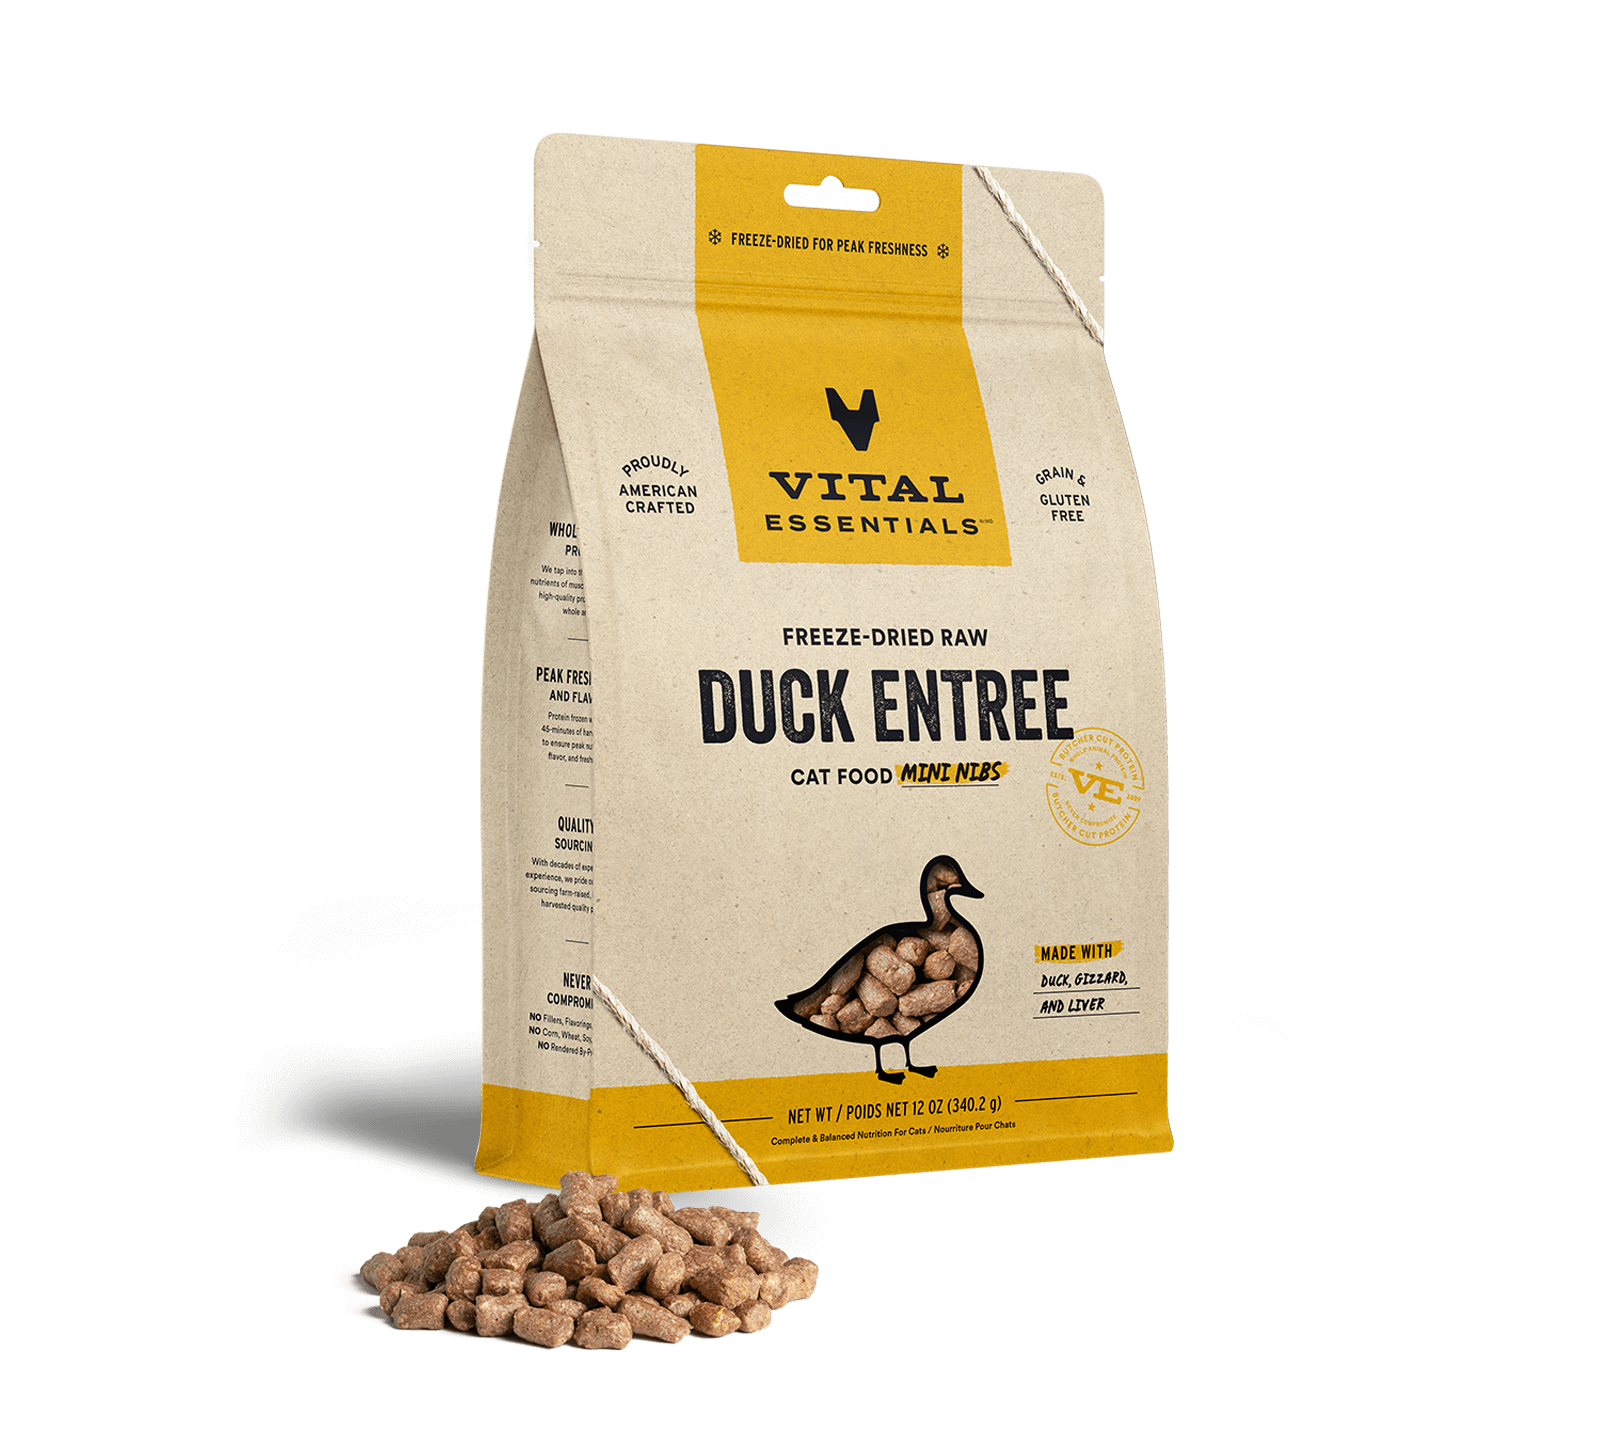 Vital Essentials Freeze-Dried Raw Duck Entree Cat Food Mini Nibs, 12 oz - Health/First Aid